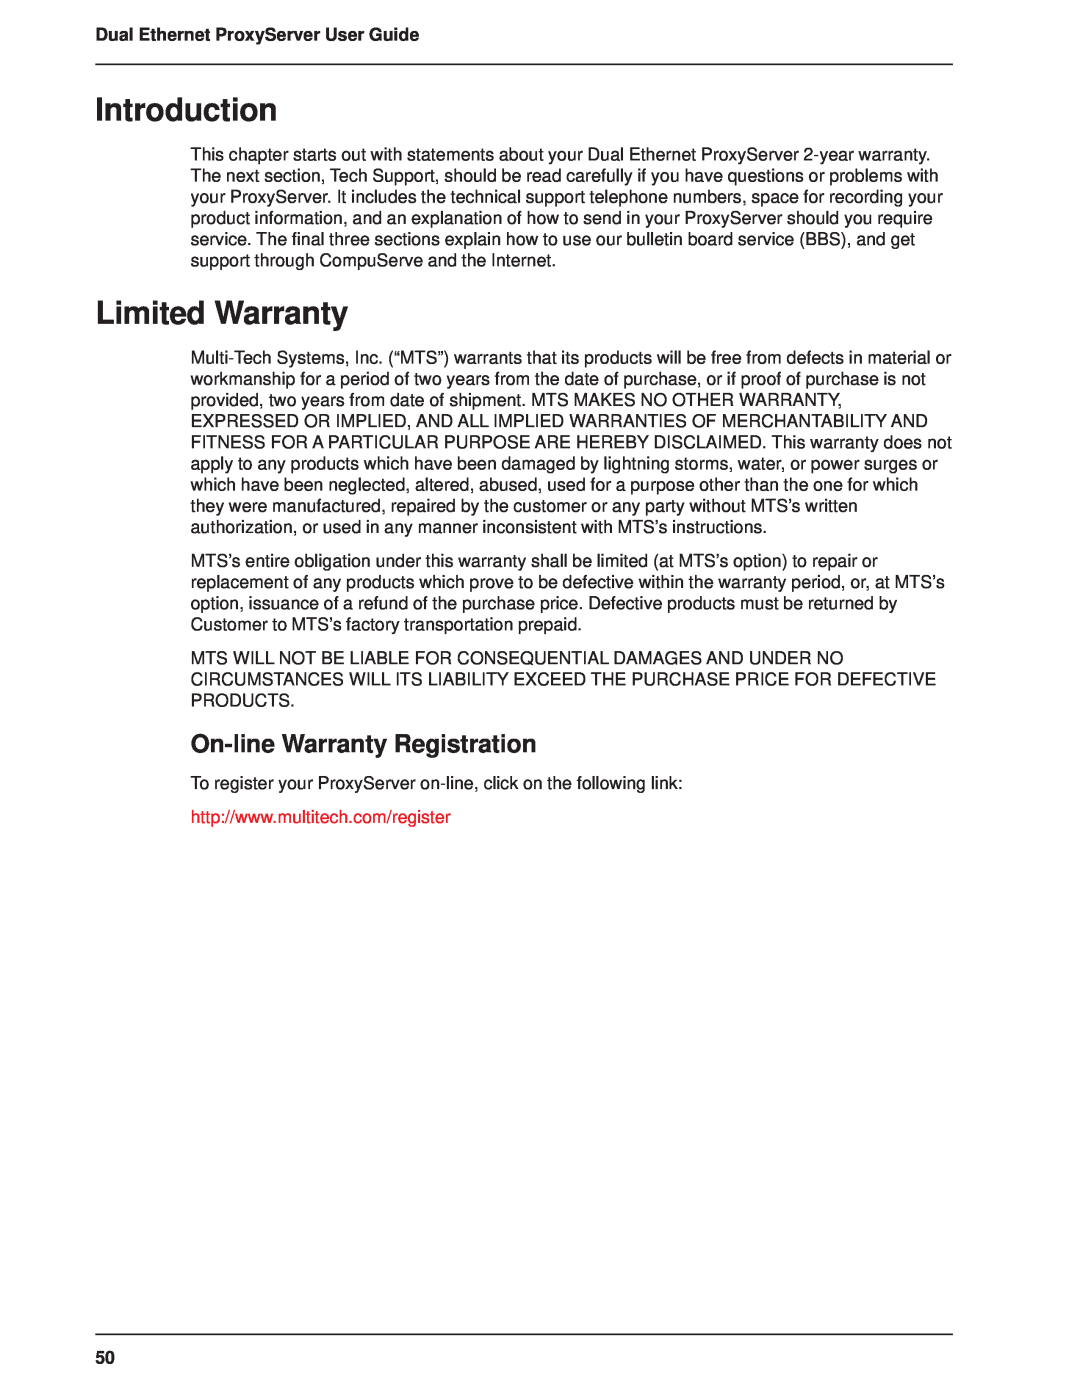 Multitech MTPSR1-120 Limited Warranty, On-line Warranty Registration, Introduction, Dual Ethernet ProxyServer User Guide 